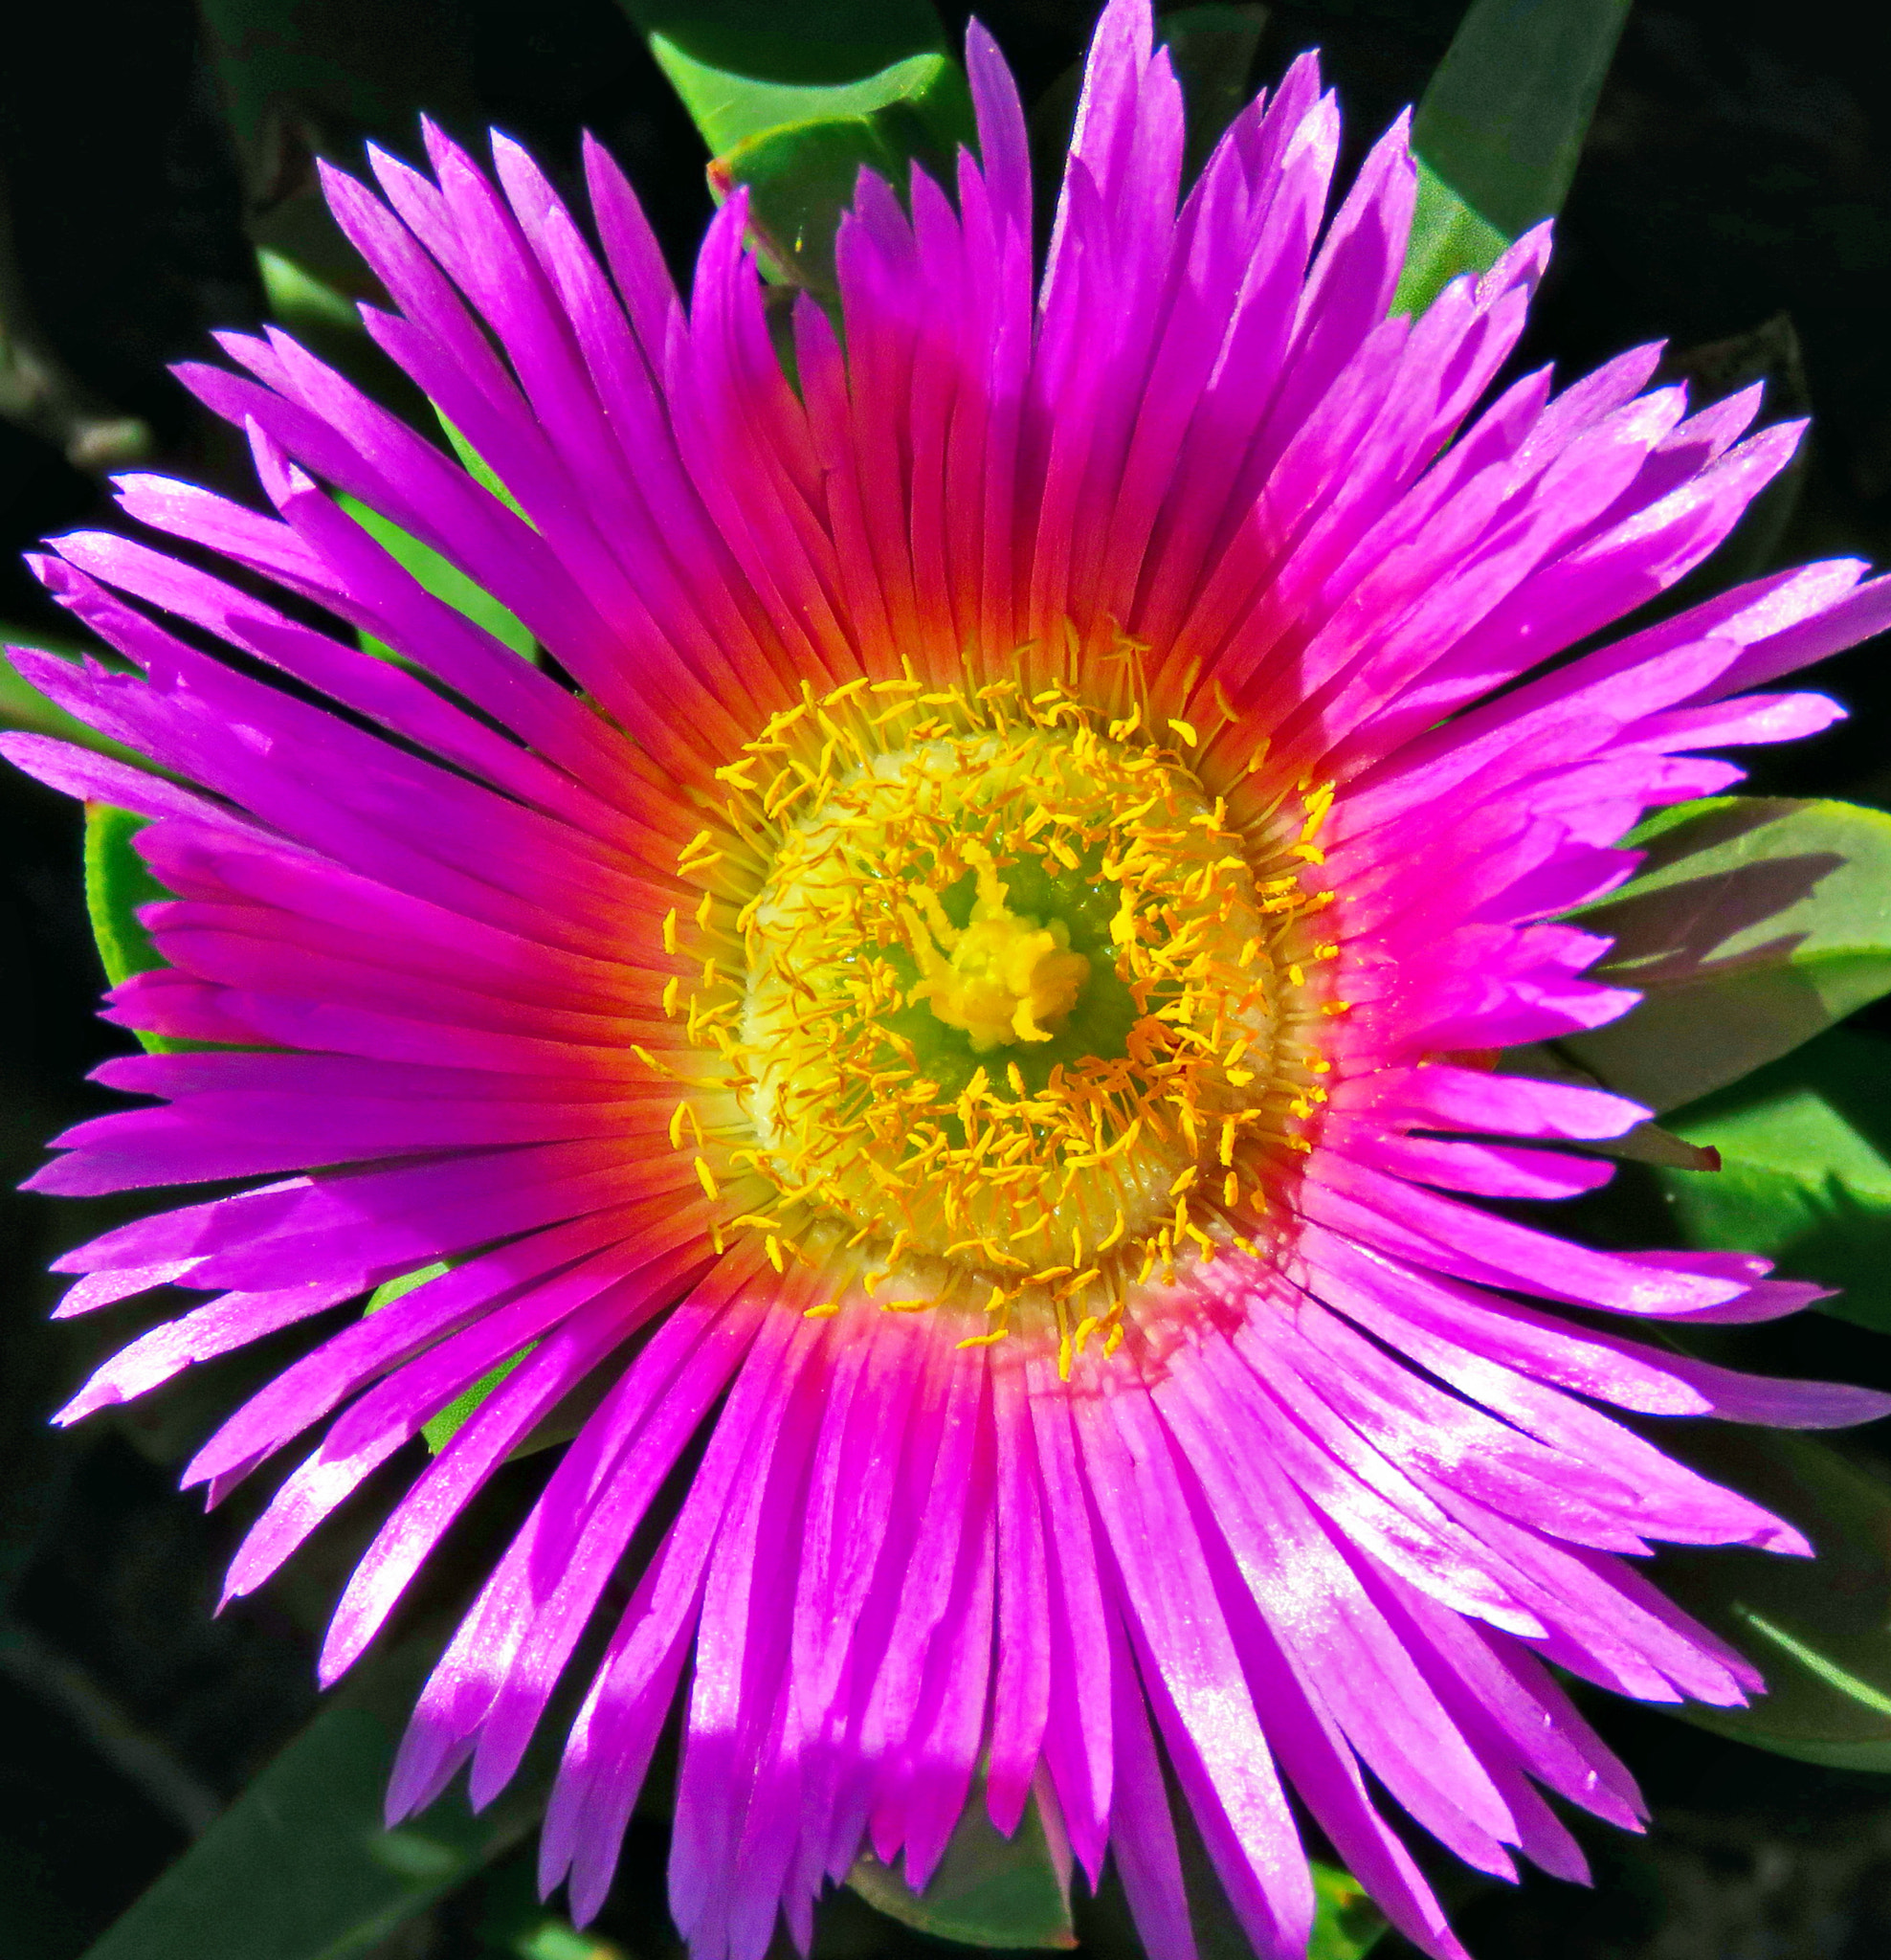 Canon PowerShot SX60 HS + 3.8 - 247.0 mm sample photo. Purple dandelion flower photography